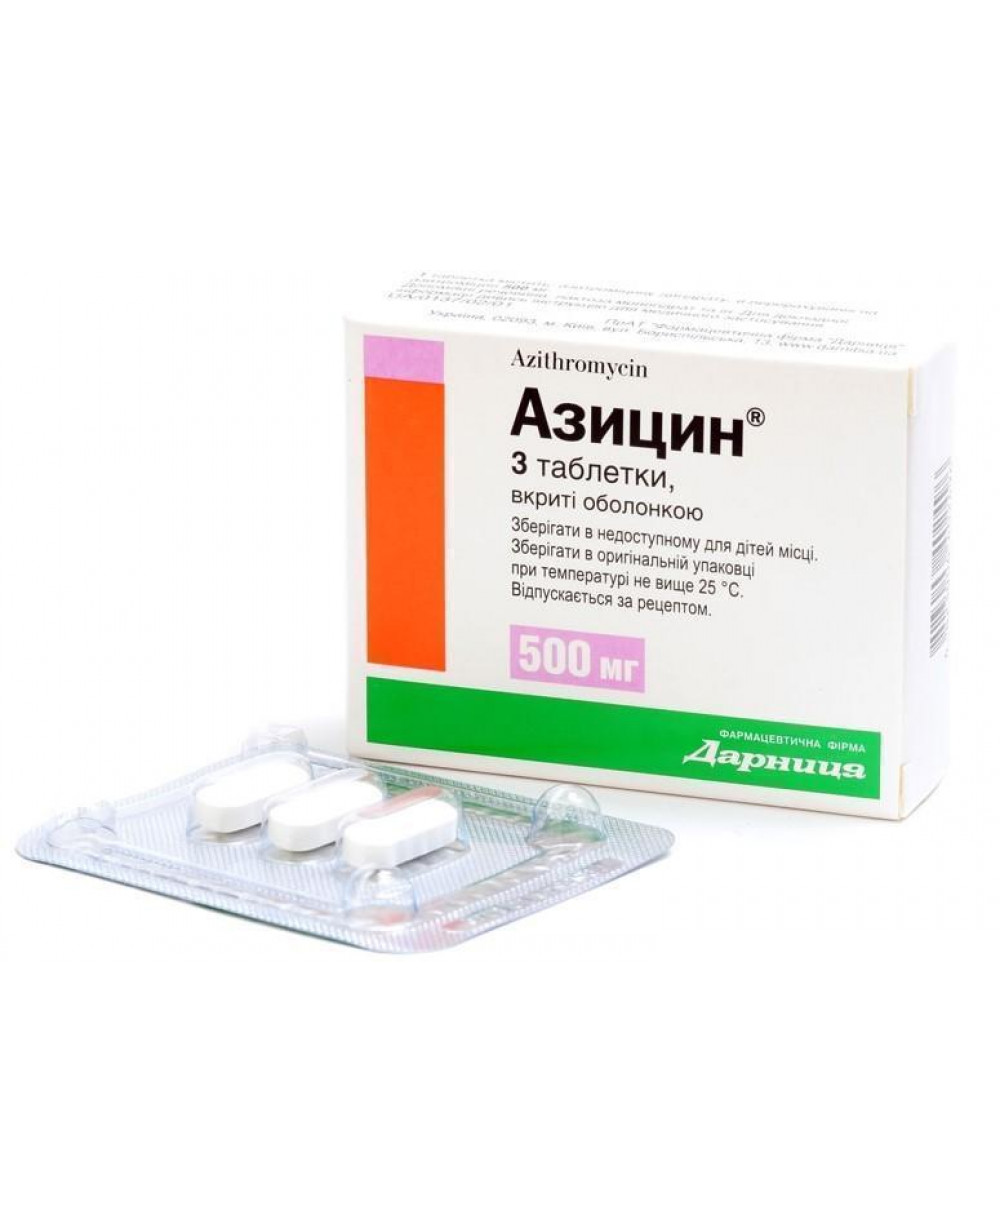 923 ЗАТРИН 250 - Azithromycin